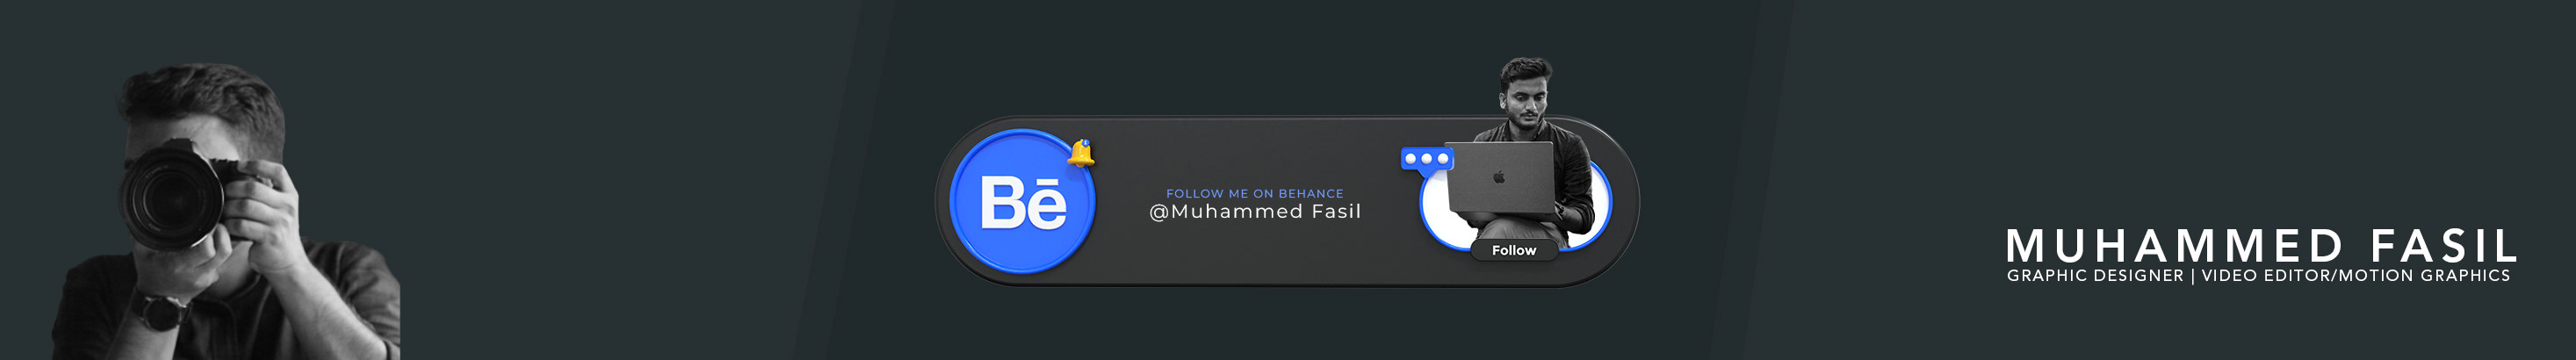 Muhammed Fasil's profile banner